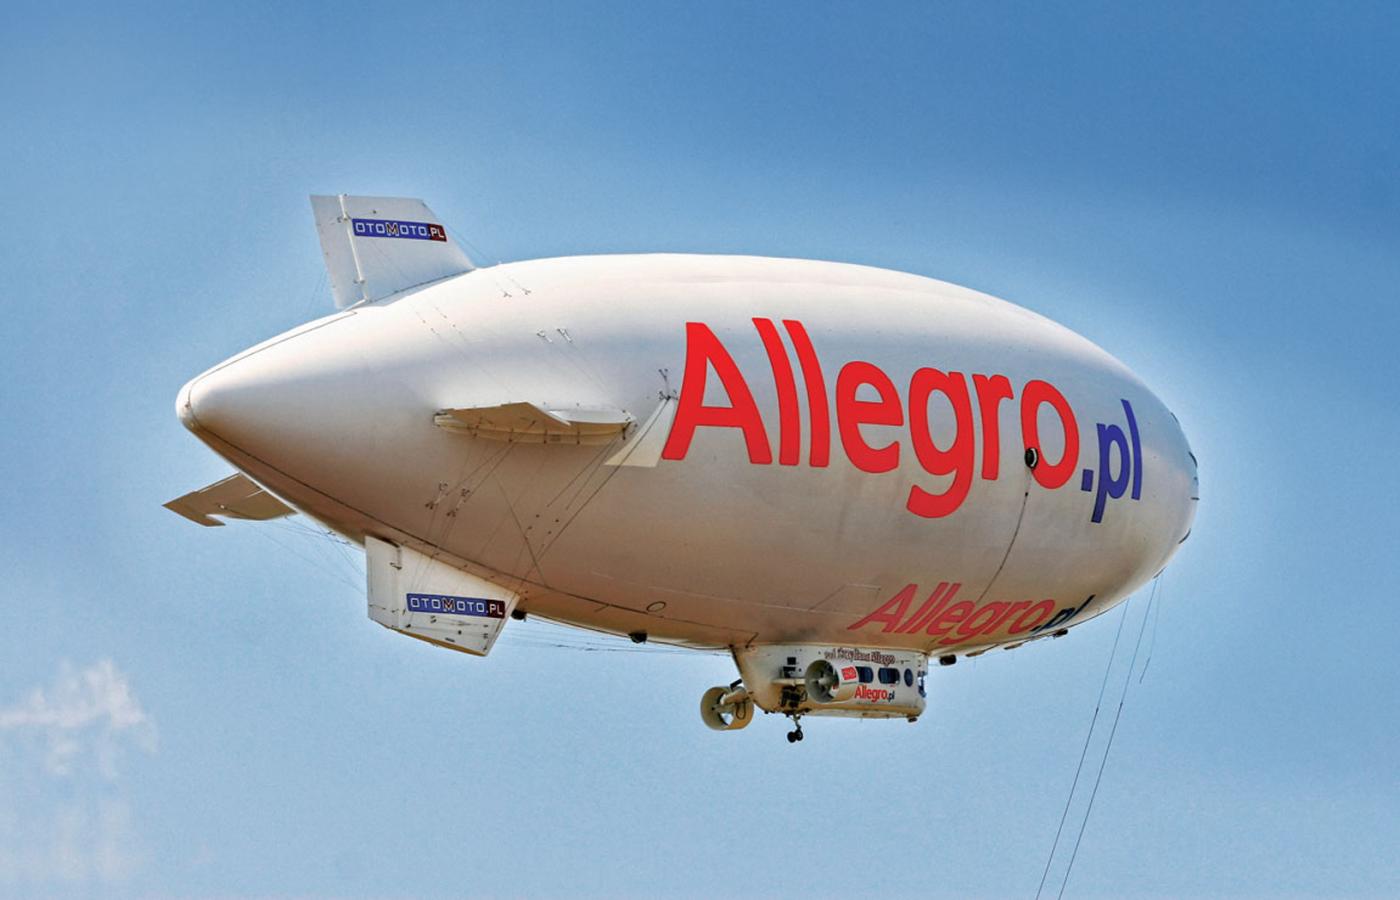 Allegro zatrudnia dziś 1275 osób, zdecydowana większość na umowach etatowych.